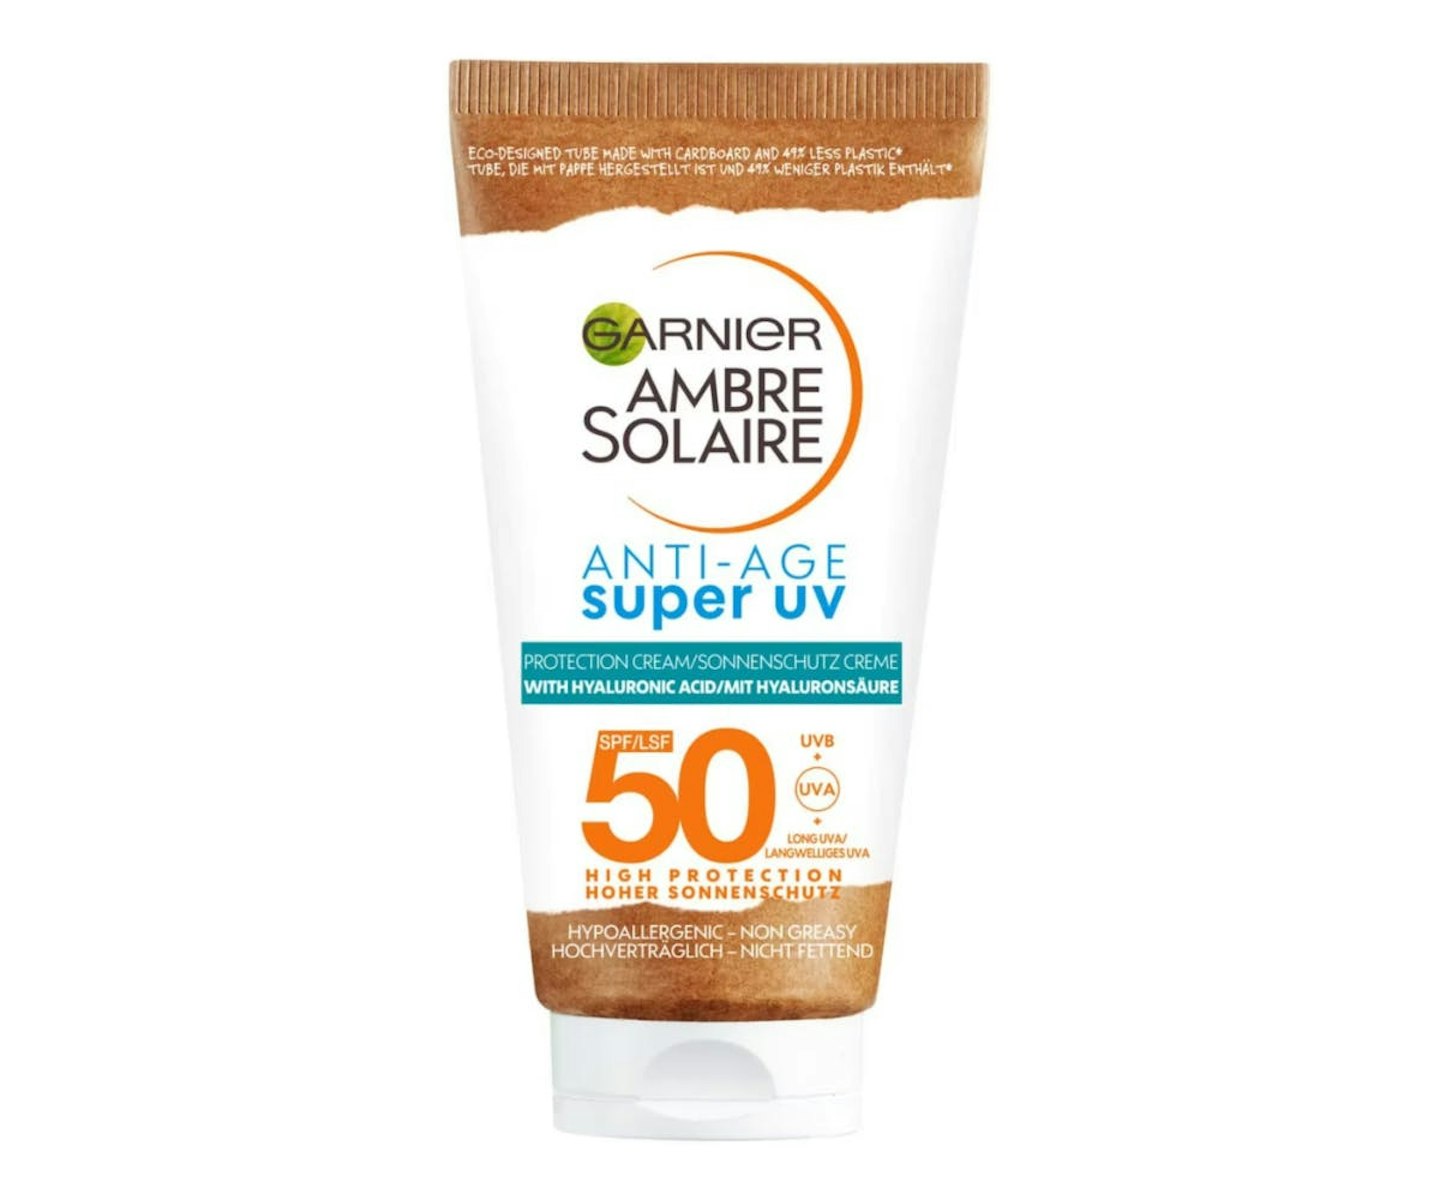 Garnier Ambre Solaire Super UV Anti-age Face Protection Cream SPF50 